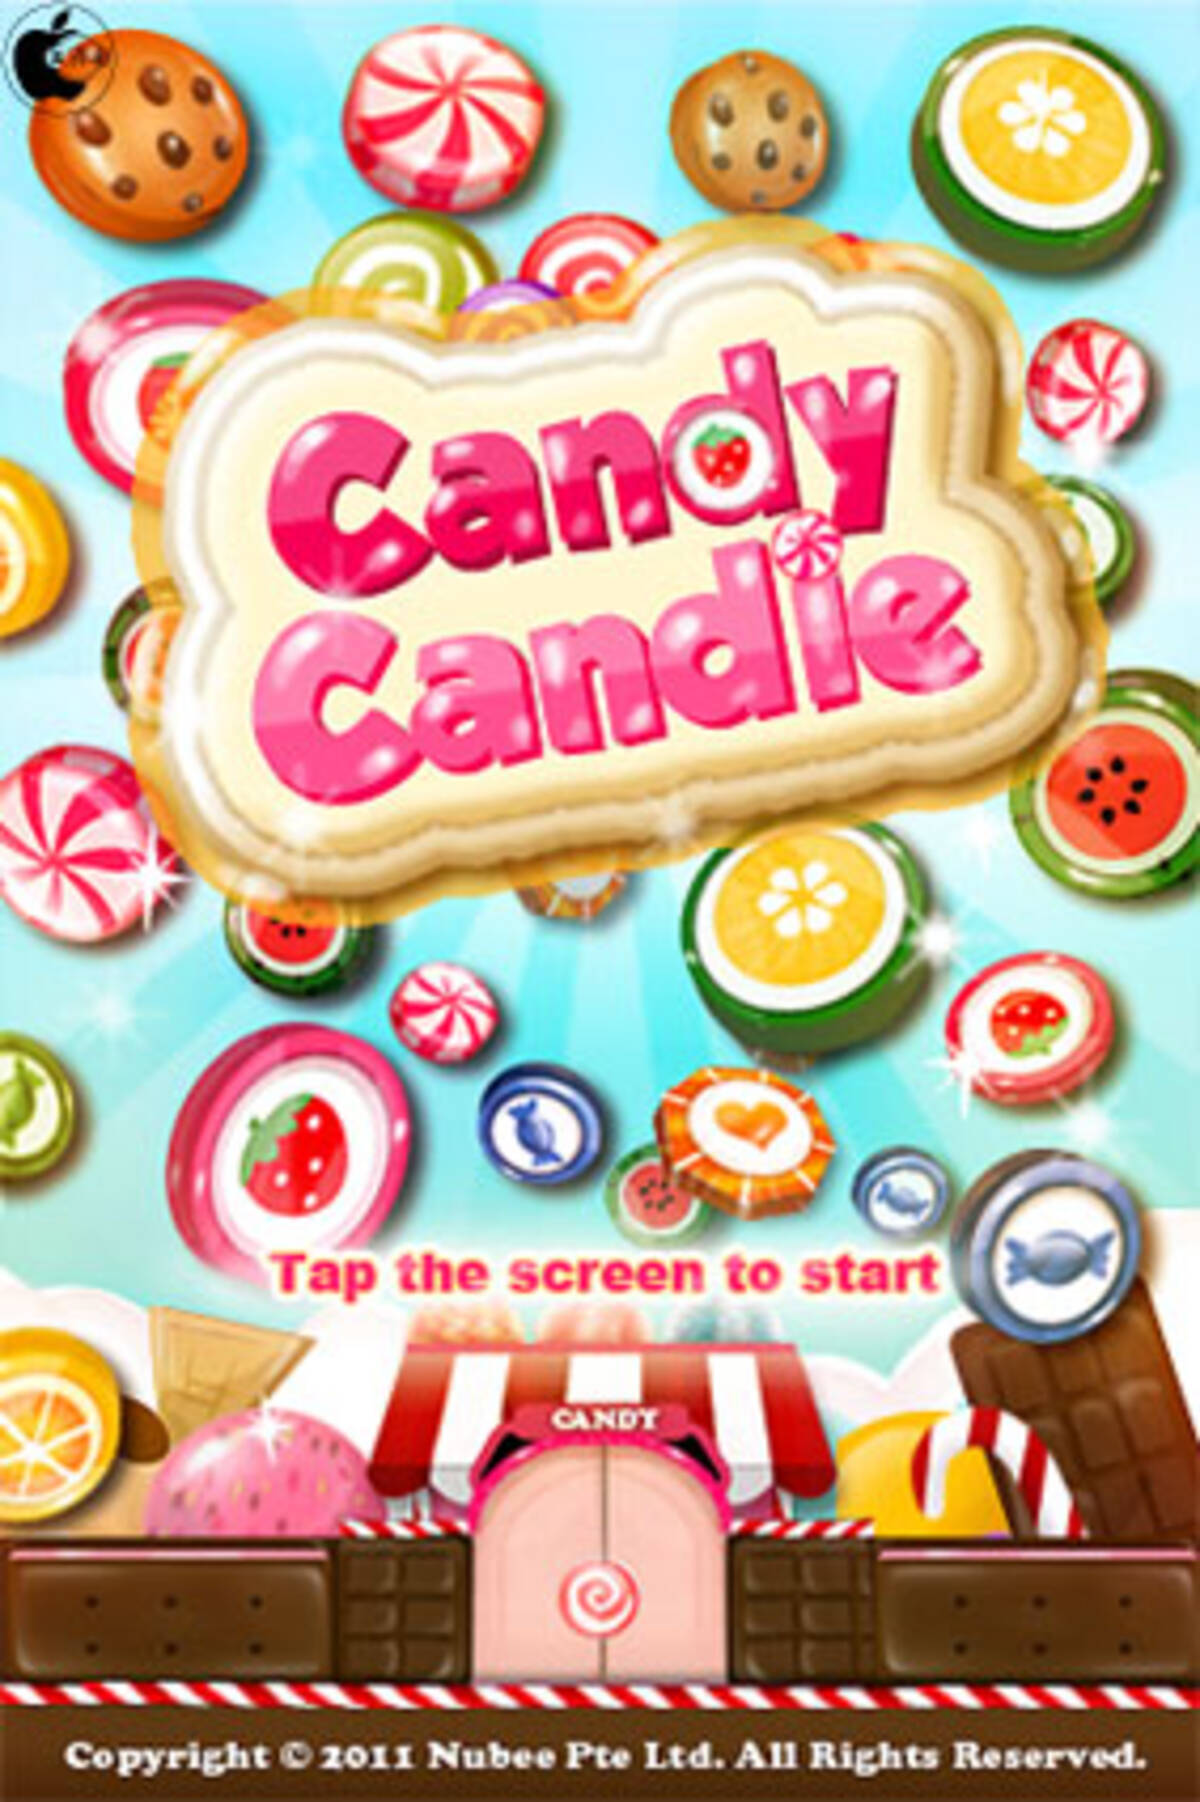 キャンディ型コインゲームアプリ Candy Candie を試す 11年5月10日 エキサイトニュース